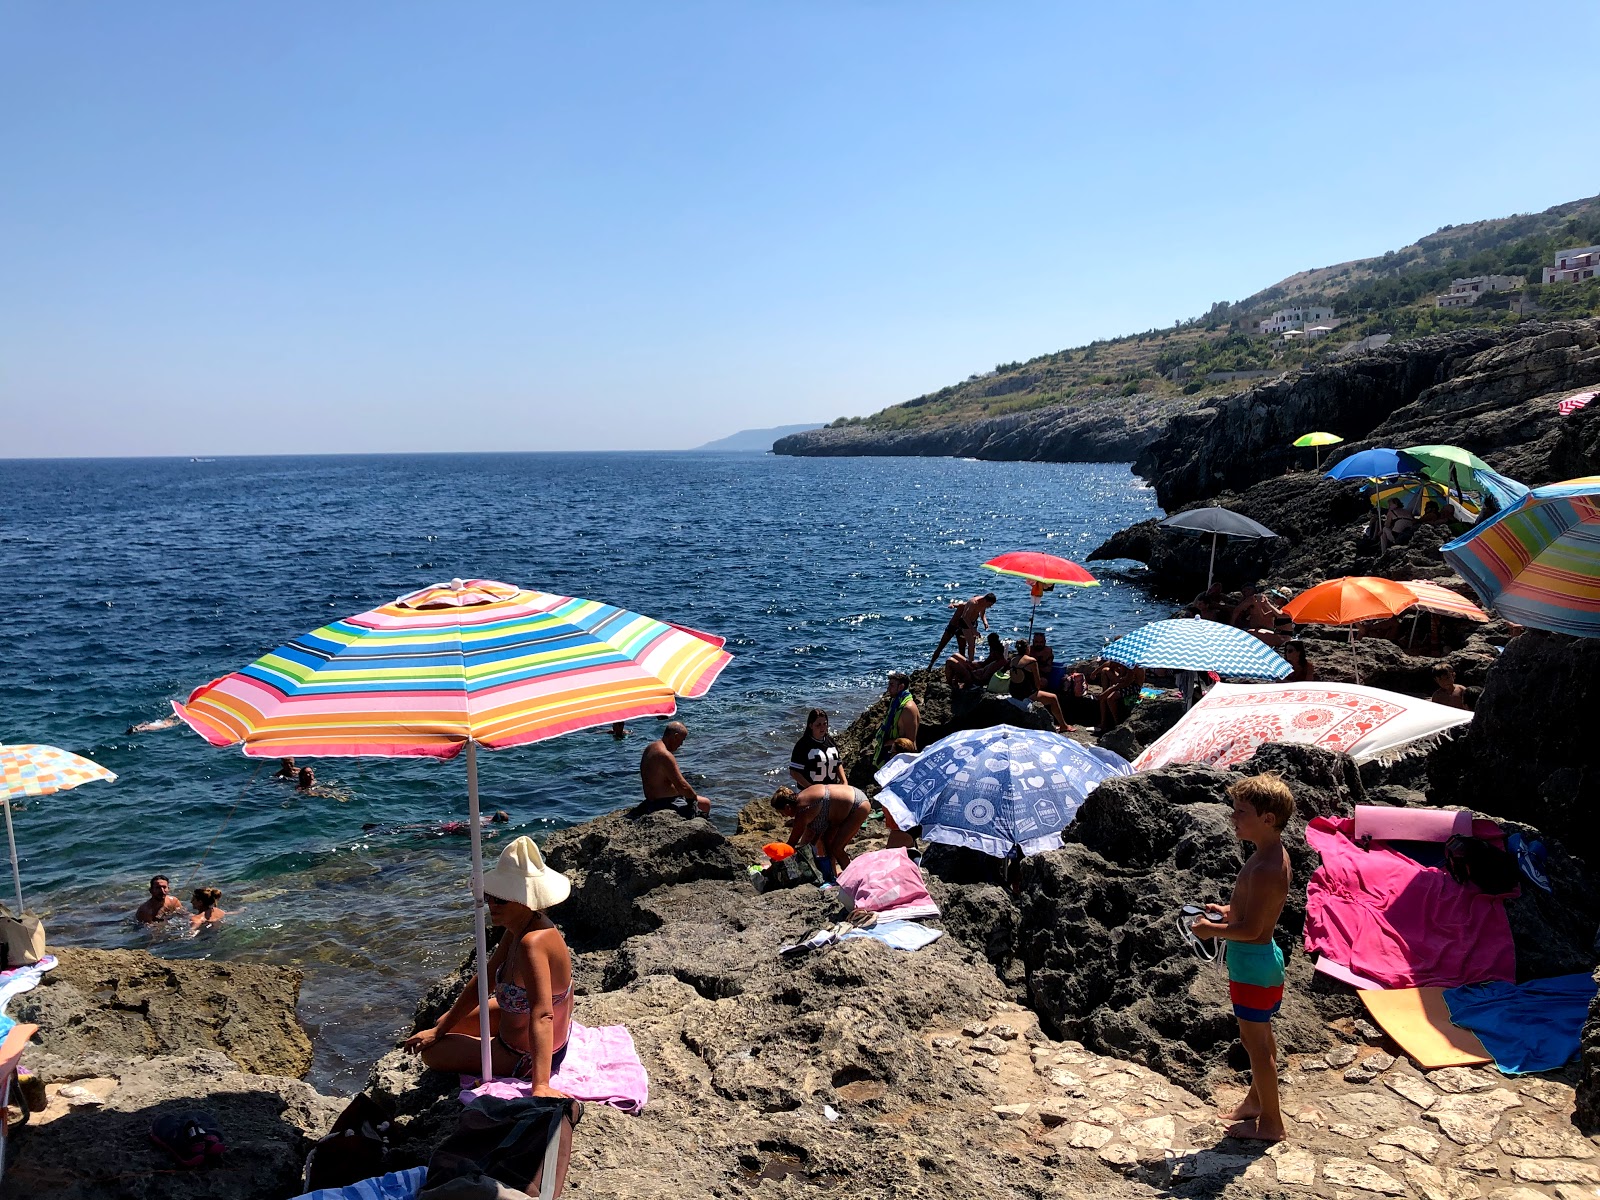 Spiaggia della Grotta Verde的照片 带有蓝色纯水表面